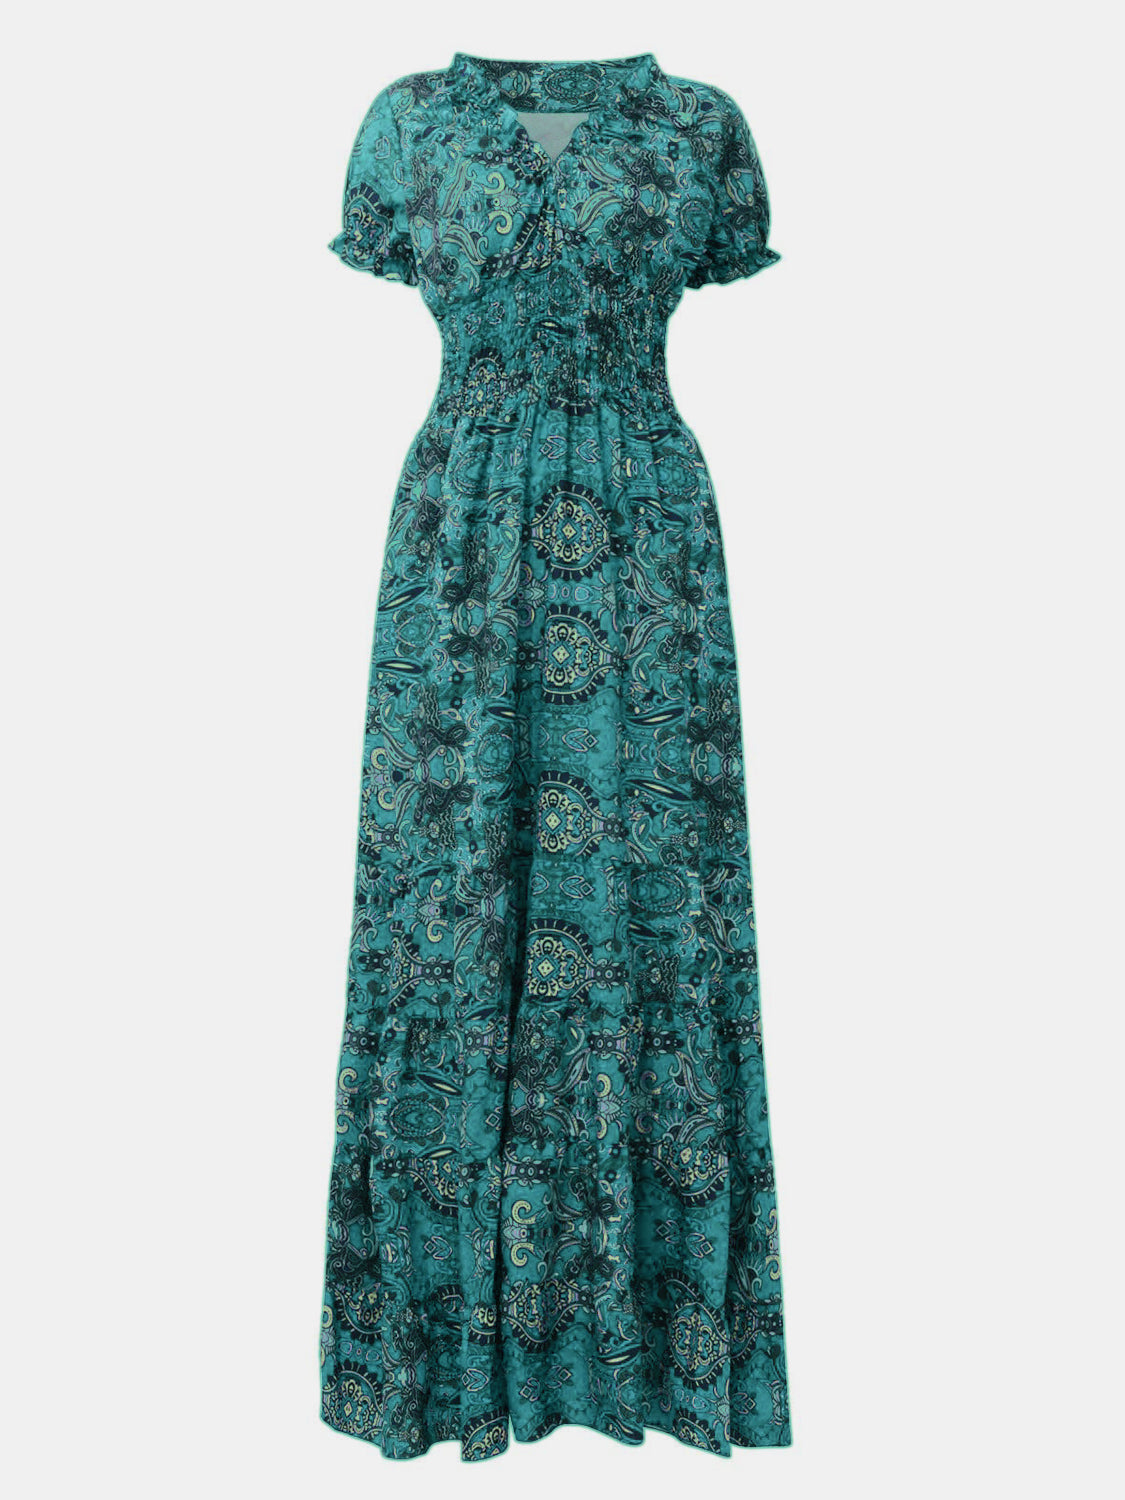 Smocked Waist Boho Maxi Dress | Ruffled Neckline Dress | Bohemian Maxi Dress